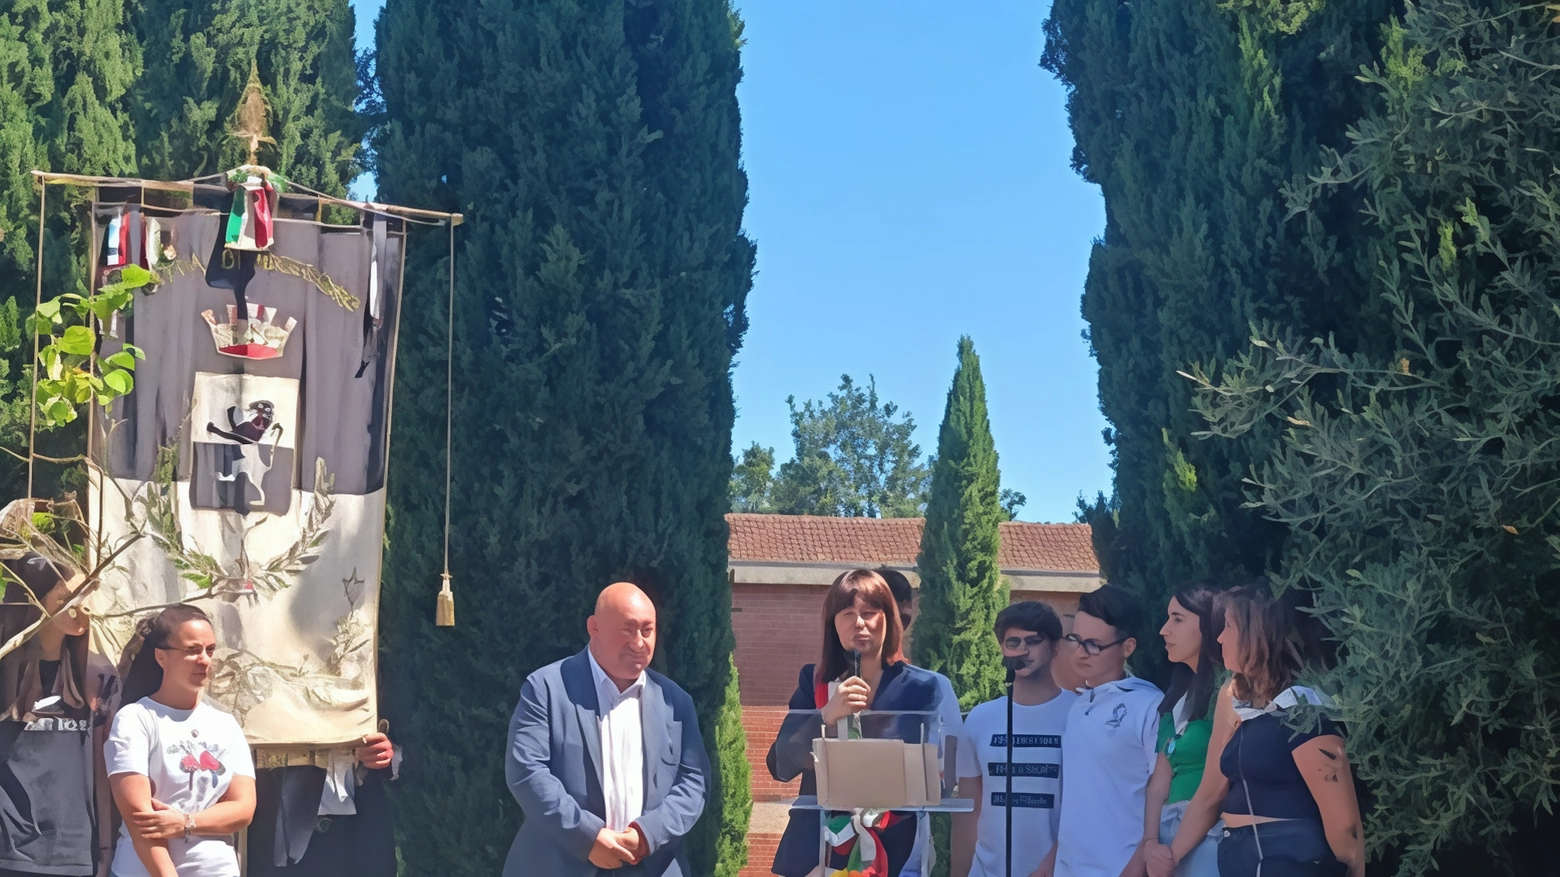 Il 6 luglio 1944 Fucecchio commemora il tragico bombardamento alleato che causò due vittime civili. L'amministrazione e associazioni locali rendono omaggio alle vittime e promuovono la pace.